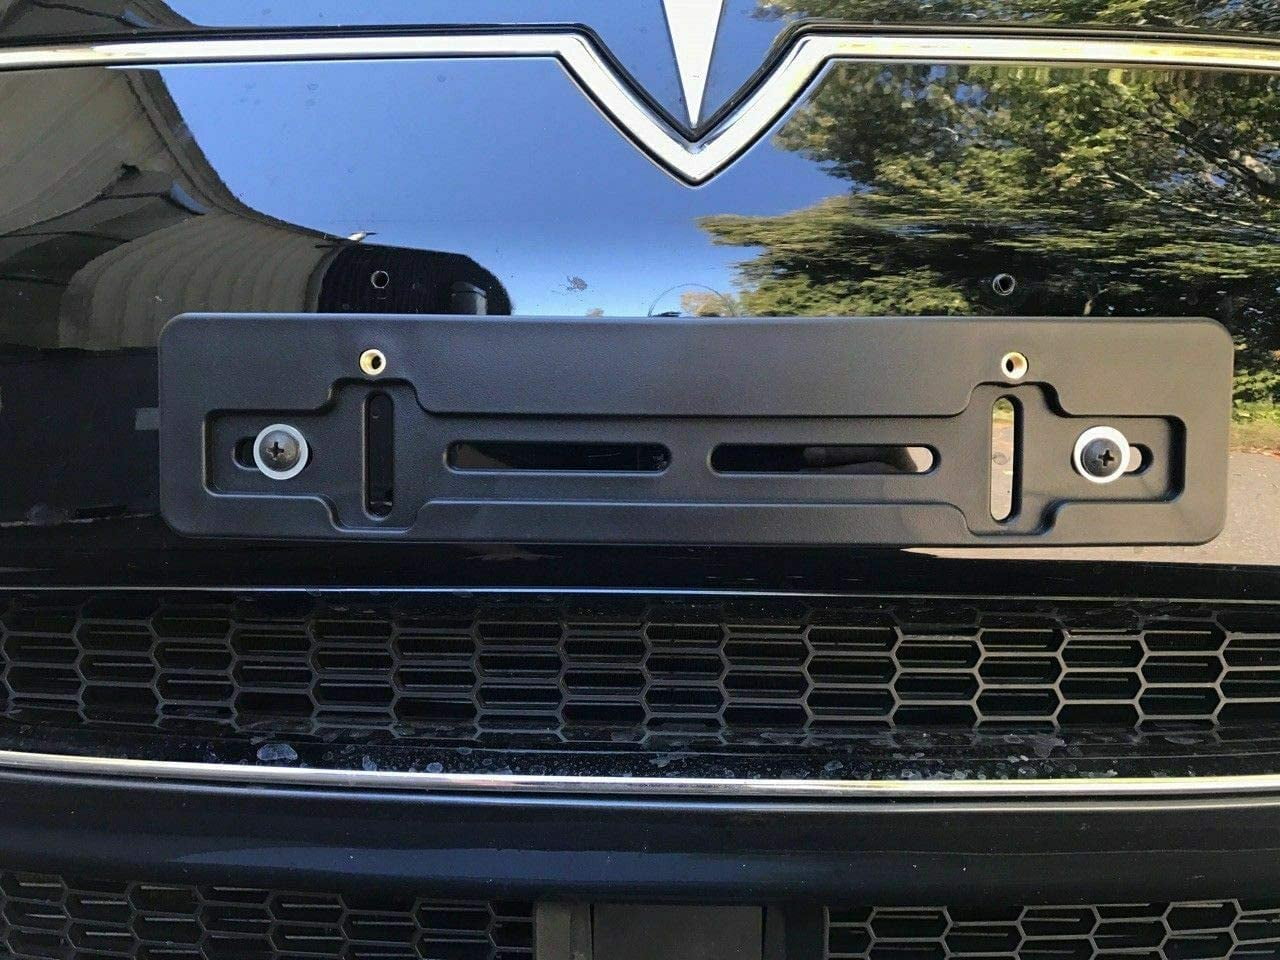 TN TrunkNets Inc License Plate Bumper Mount Holder Bracket for Tesla Model X 2016-2021Tesla Model S 2012-2021